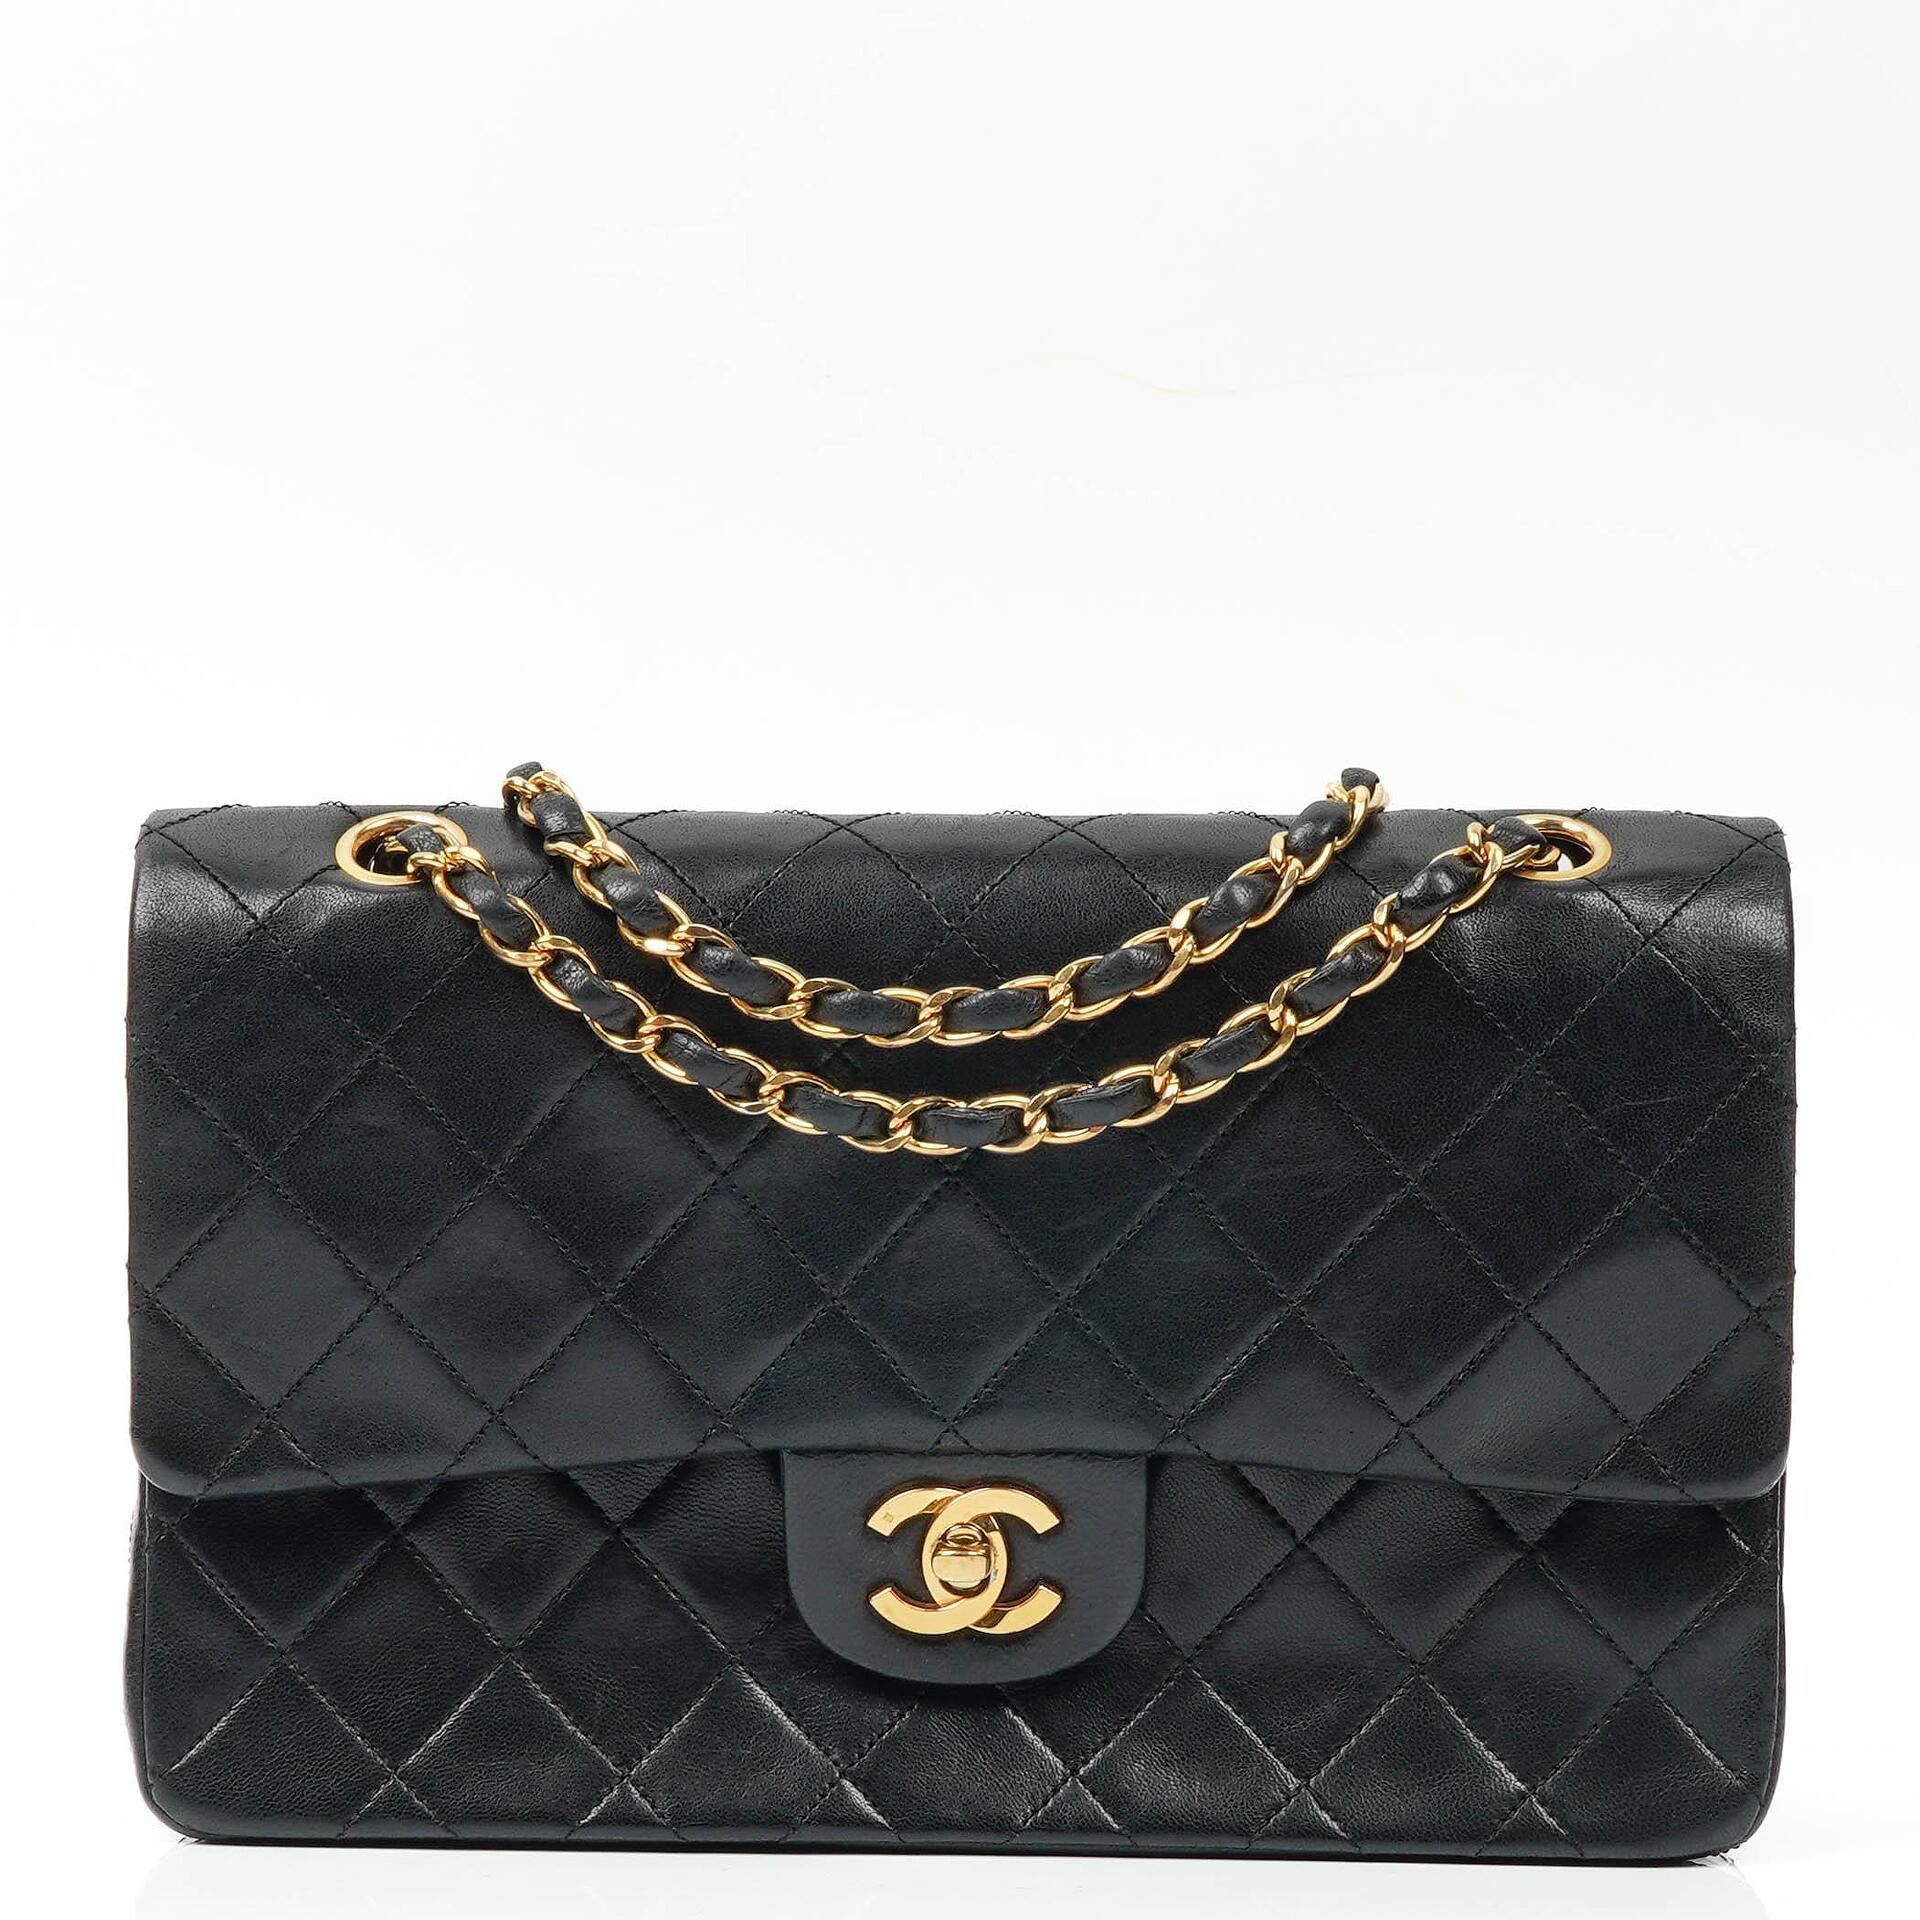 Chanel Medium Classic Double Flap Bag in Dark Beige Lambskin | Dearluxe